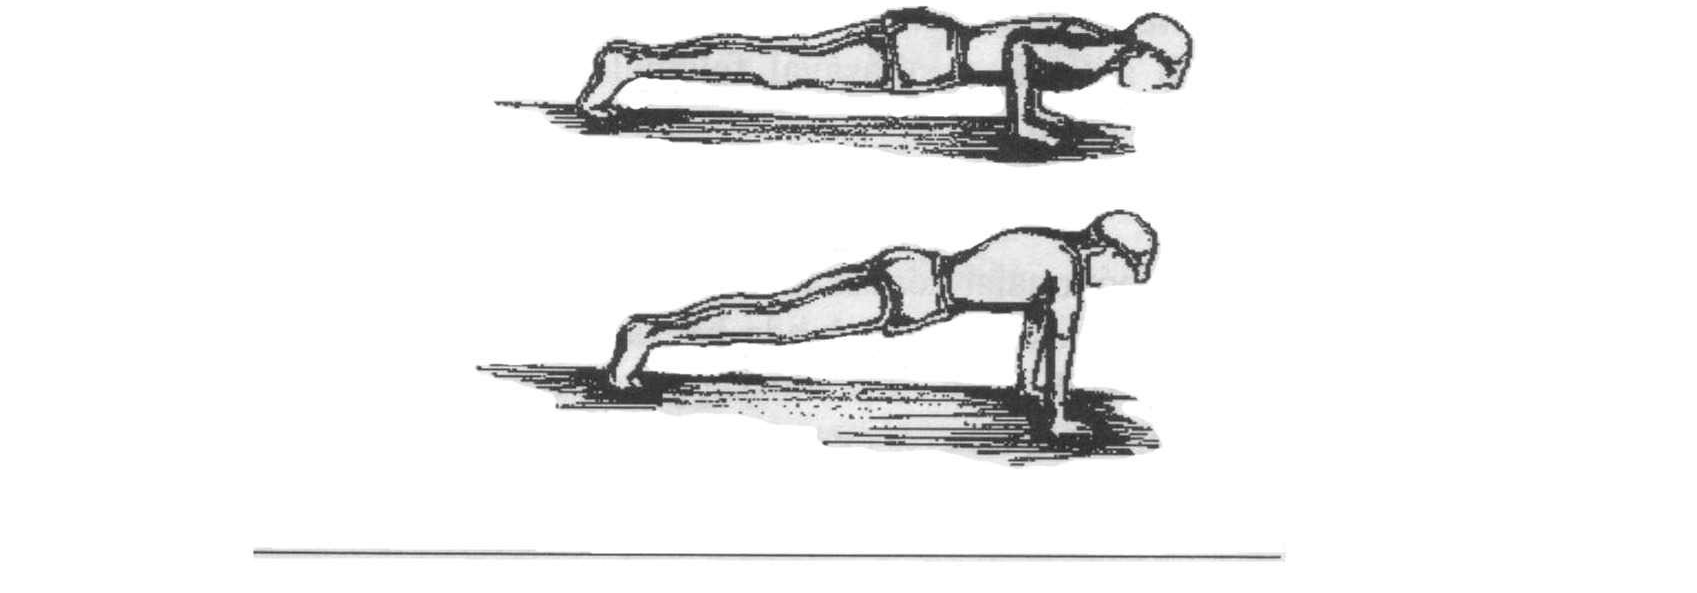 91 A gyakorlat végrehajtása: Kiinduló helyzet: mellső fekvőtámaszban a tenyerek vállszélességben vannak egymástól, a kéz-támasz előrenéző ujjakkal történik a törzs egyenes, a fej a törzs